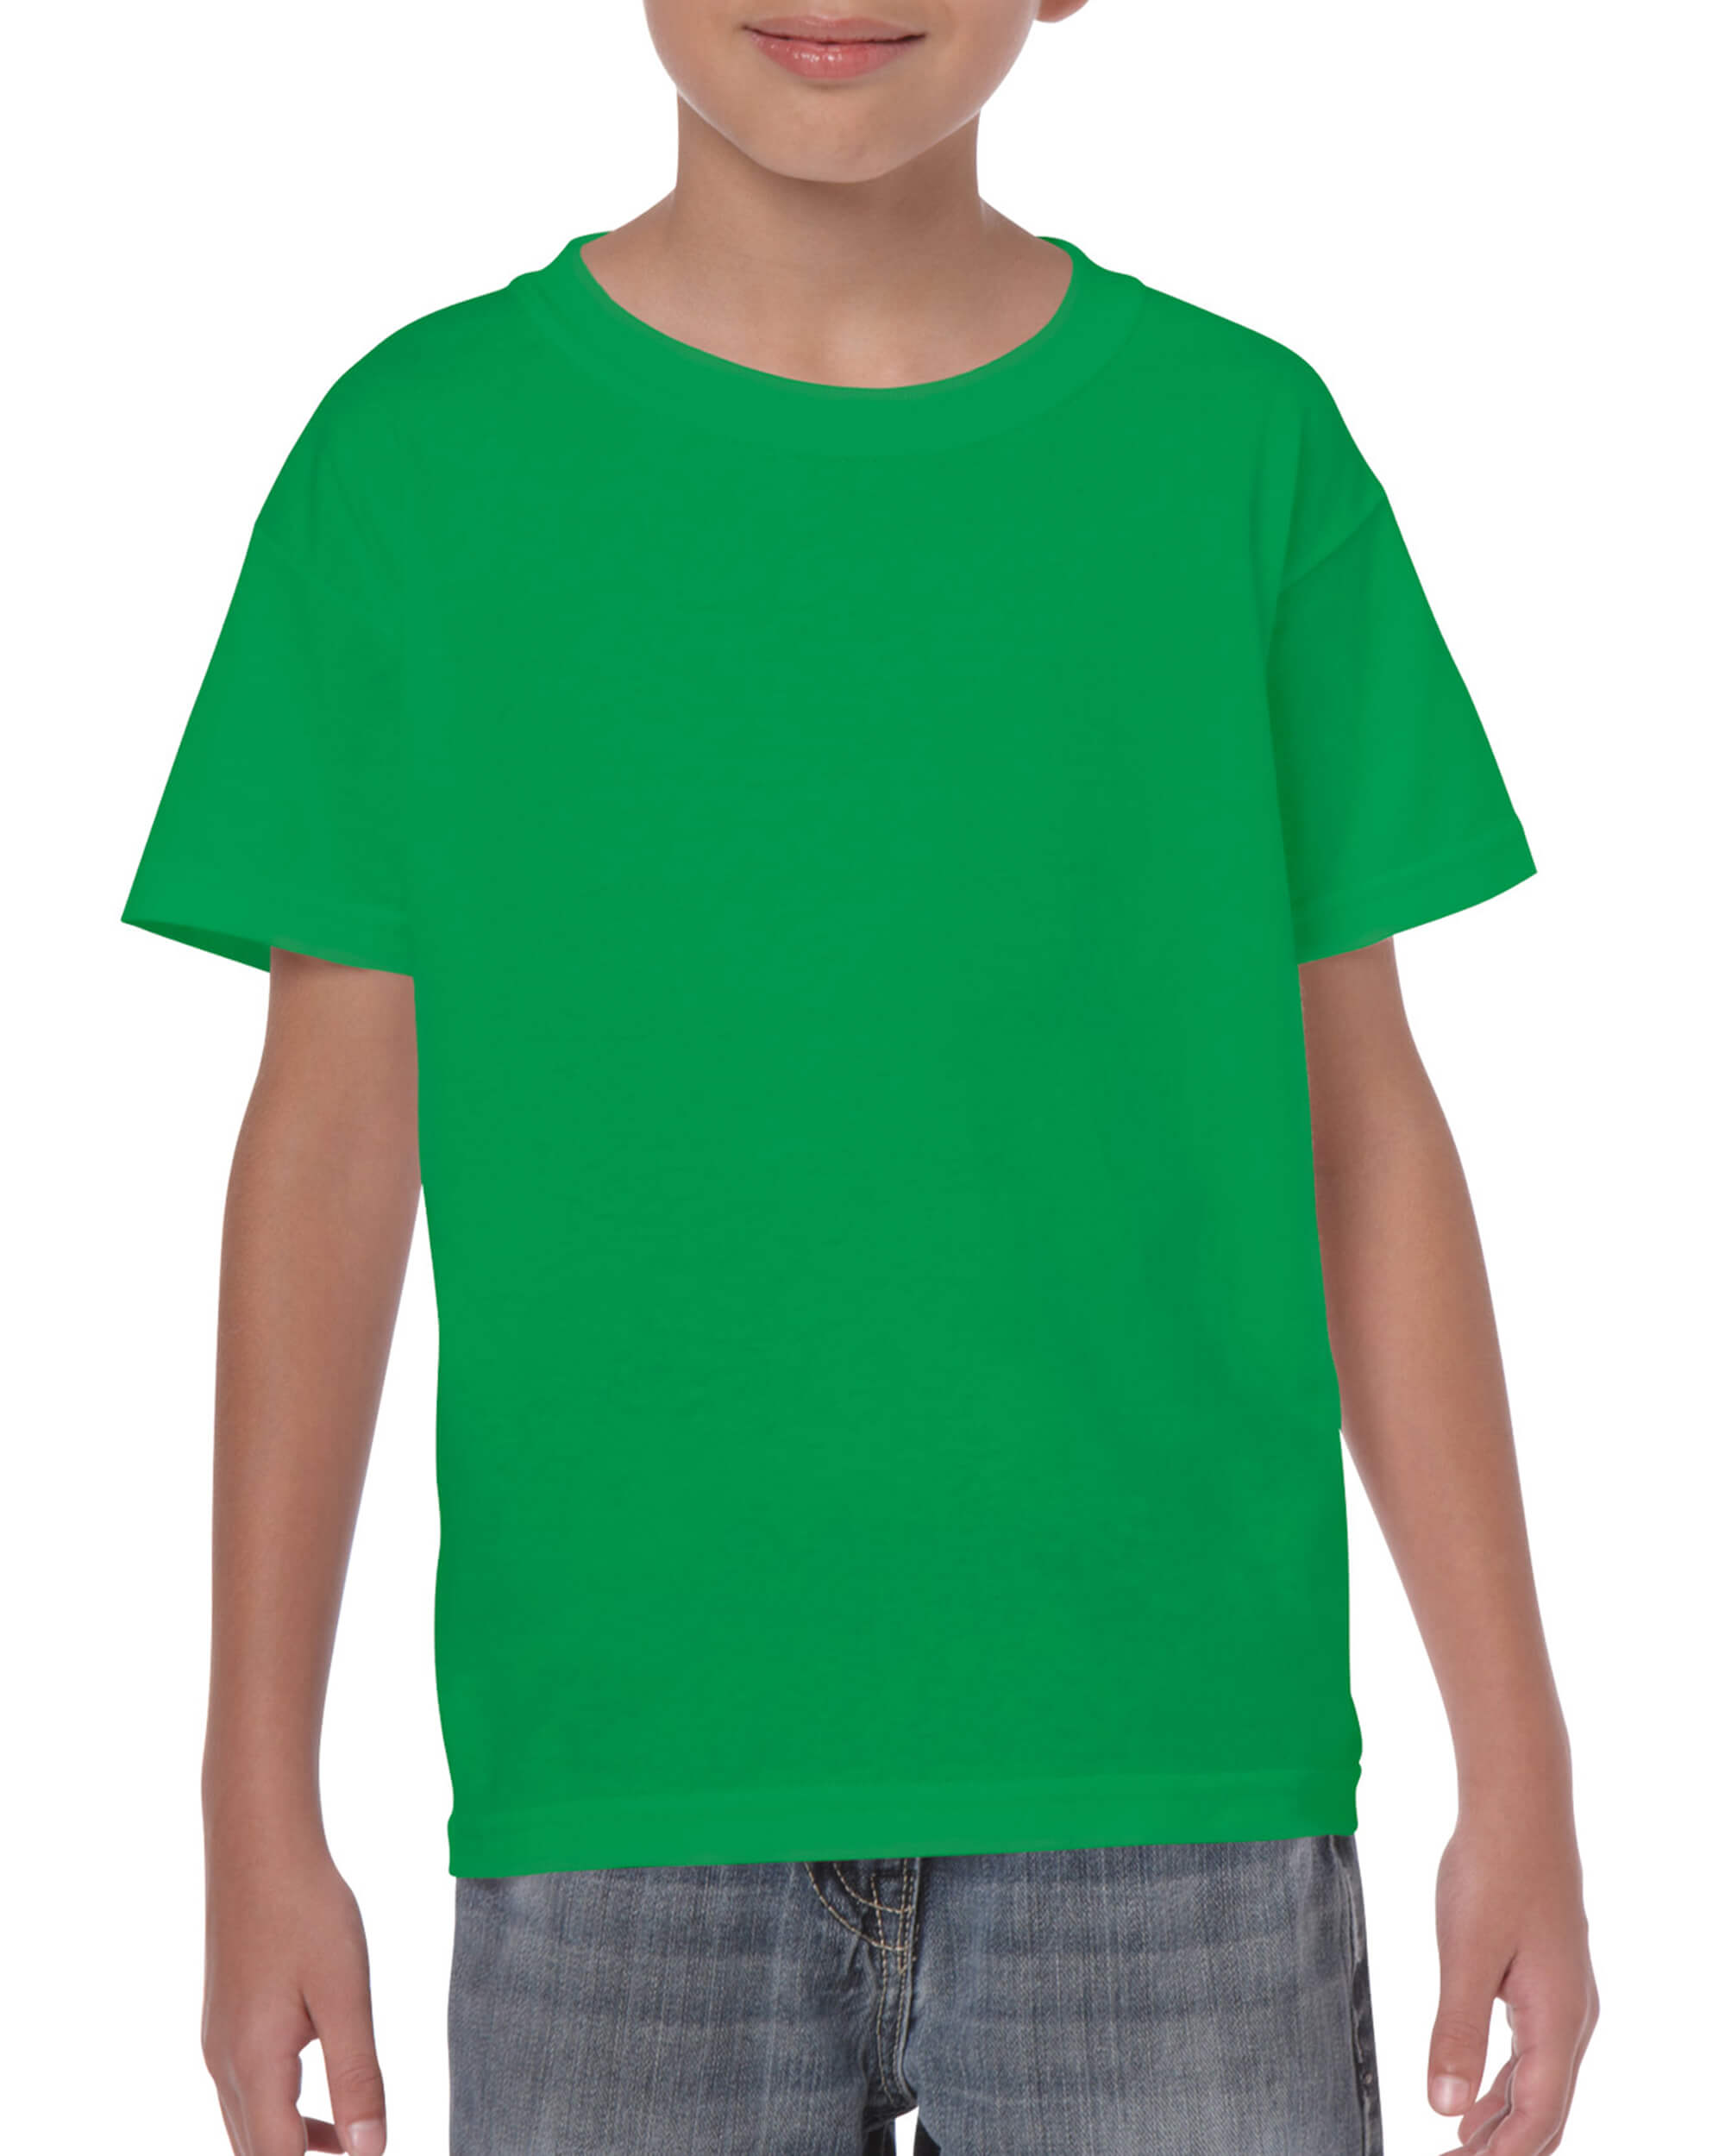 Kids Tshirt - Irish Green